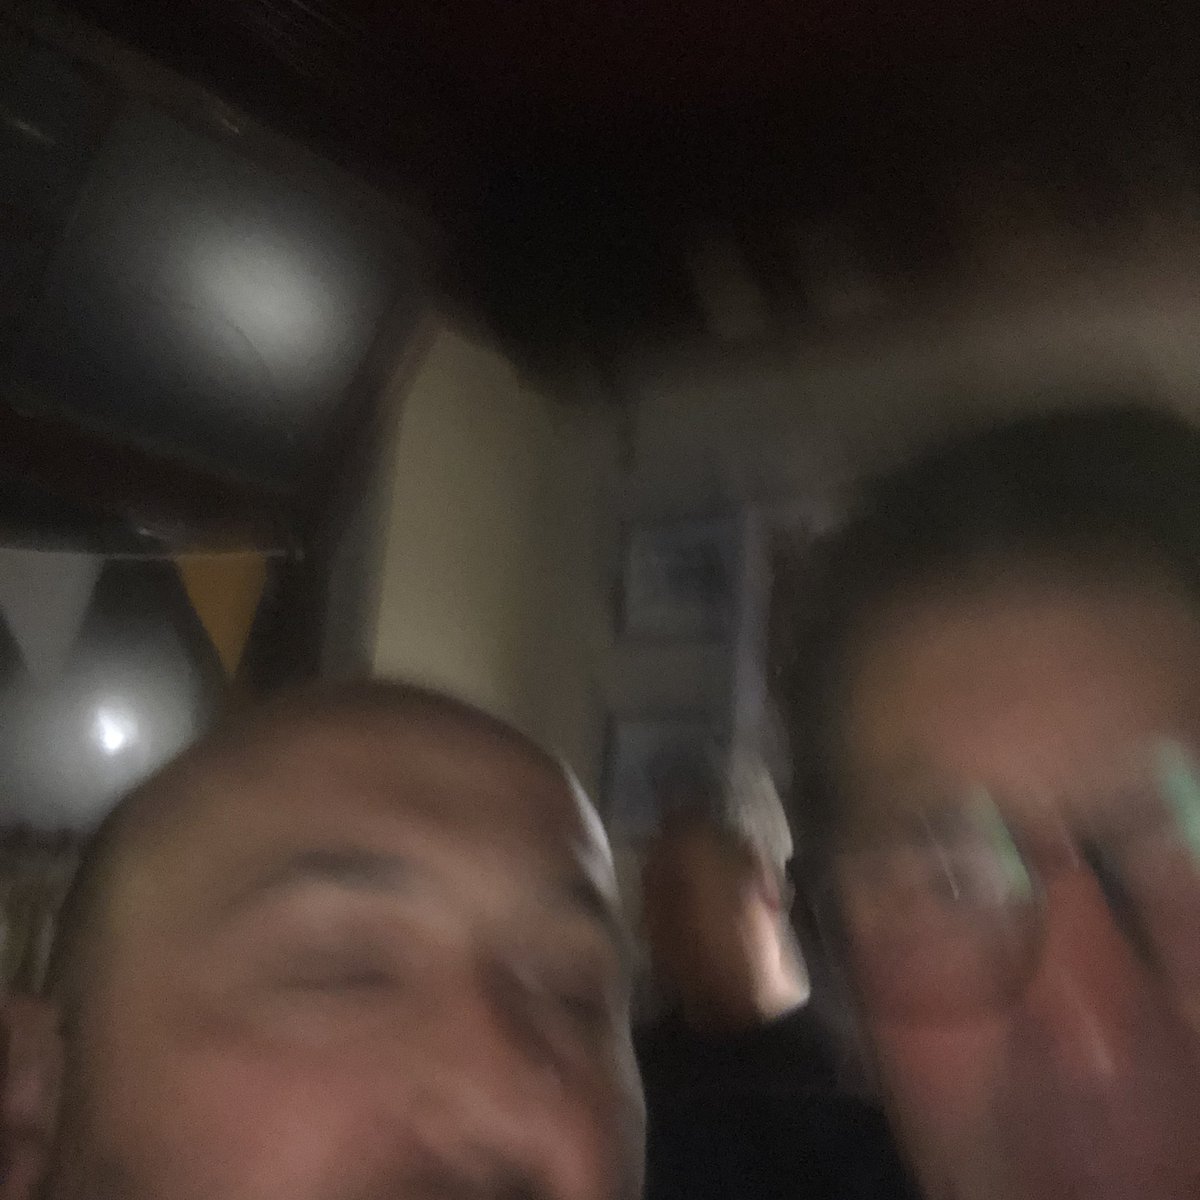 @KevinSCrowe @abers1 @joelhanley @AndrewBonningt4 @LutonTown @PellyRuddock @Darwen88 @door_2_door @OFalafel @J_Kaas @markstephenson2 Too drunk to take a selfie…